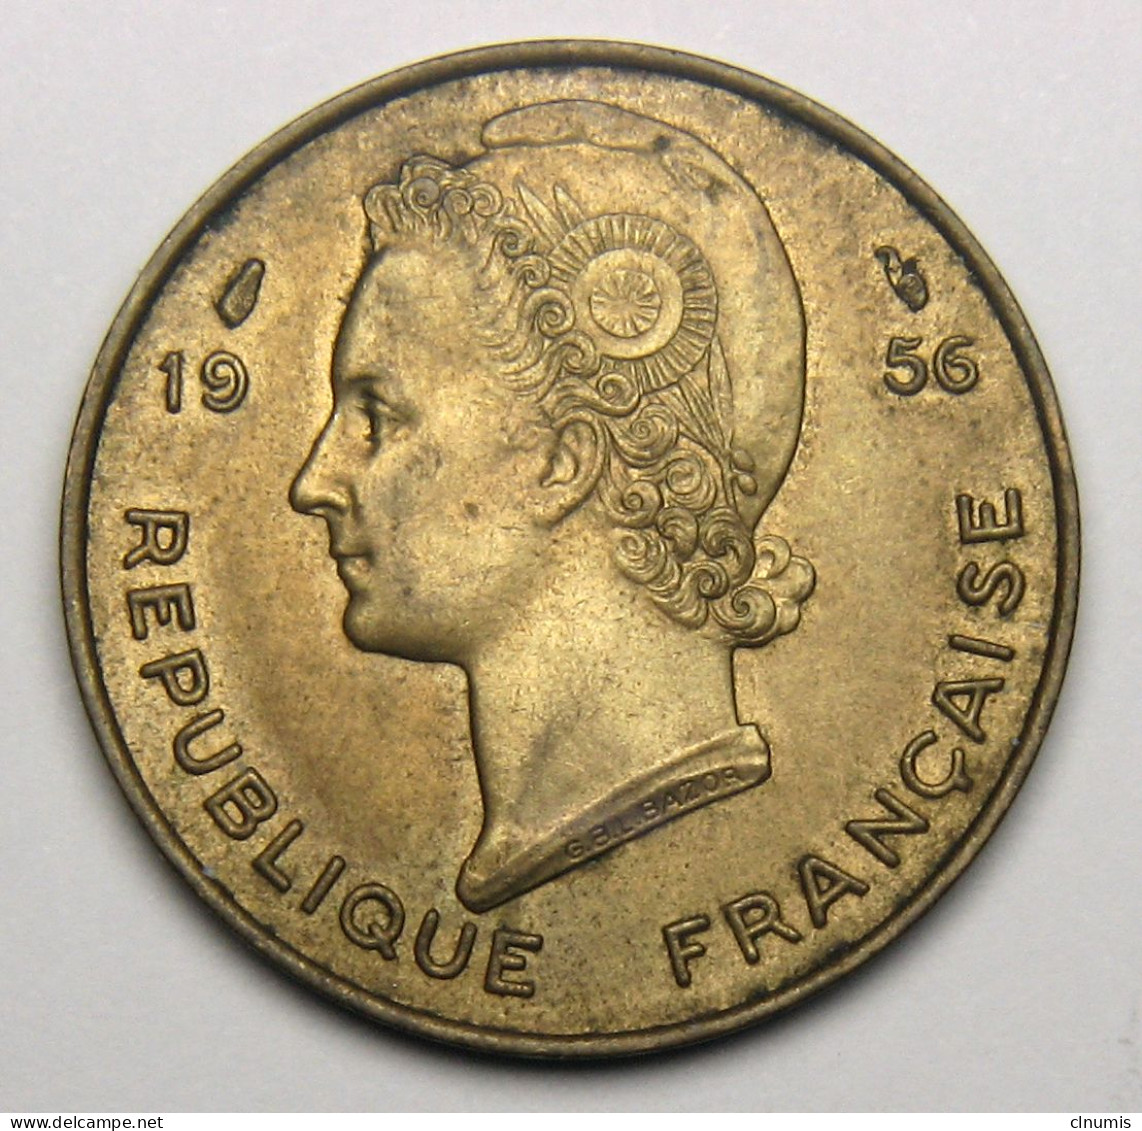 10 Francs Afrique Occidentale Française, République Française 1956 - French West Africa